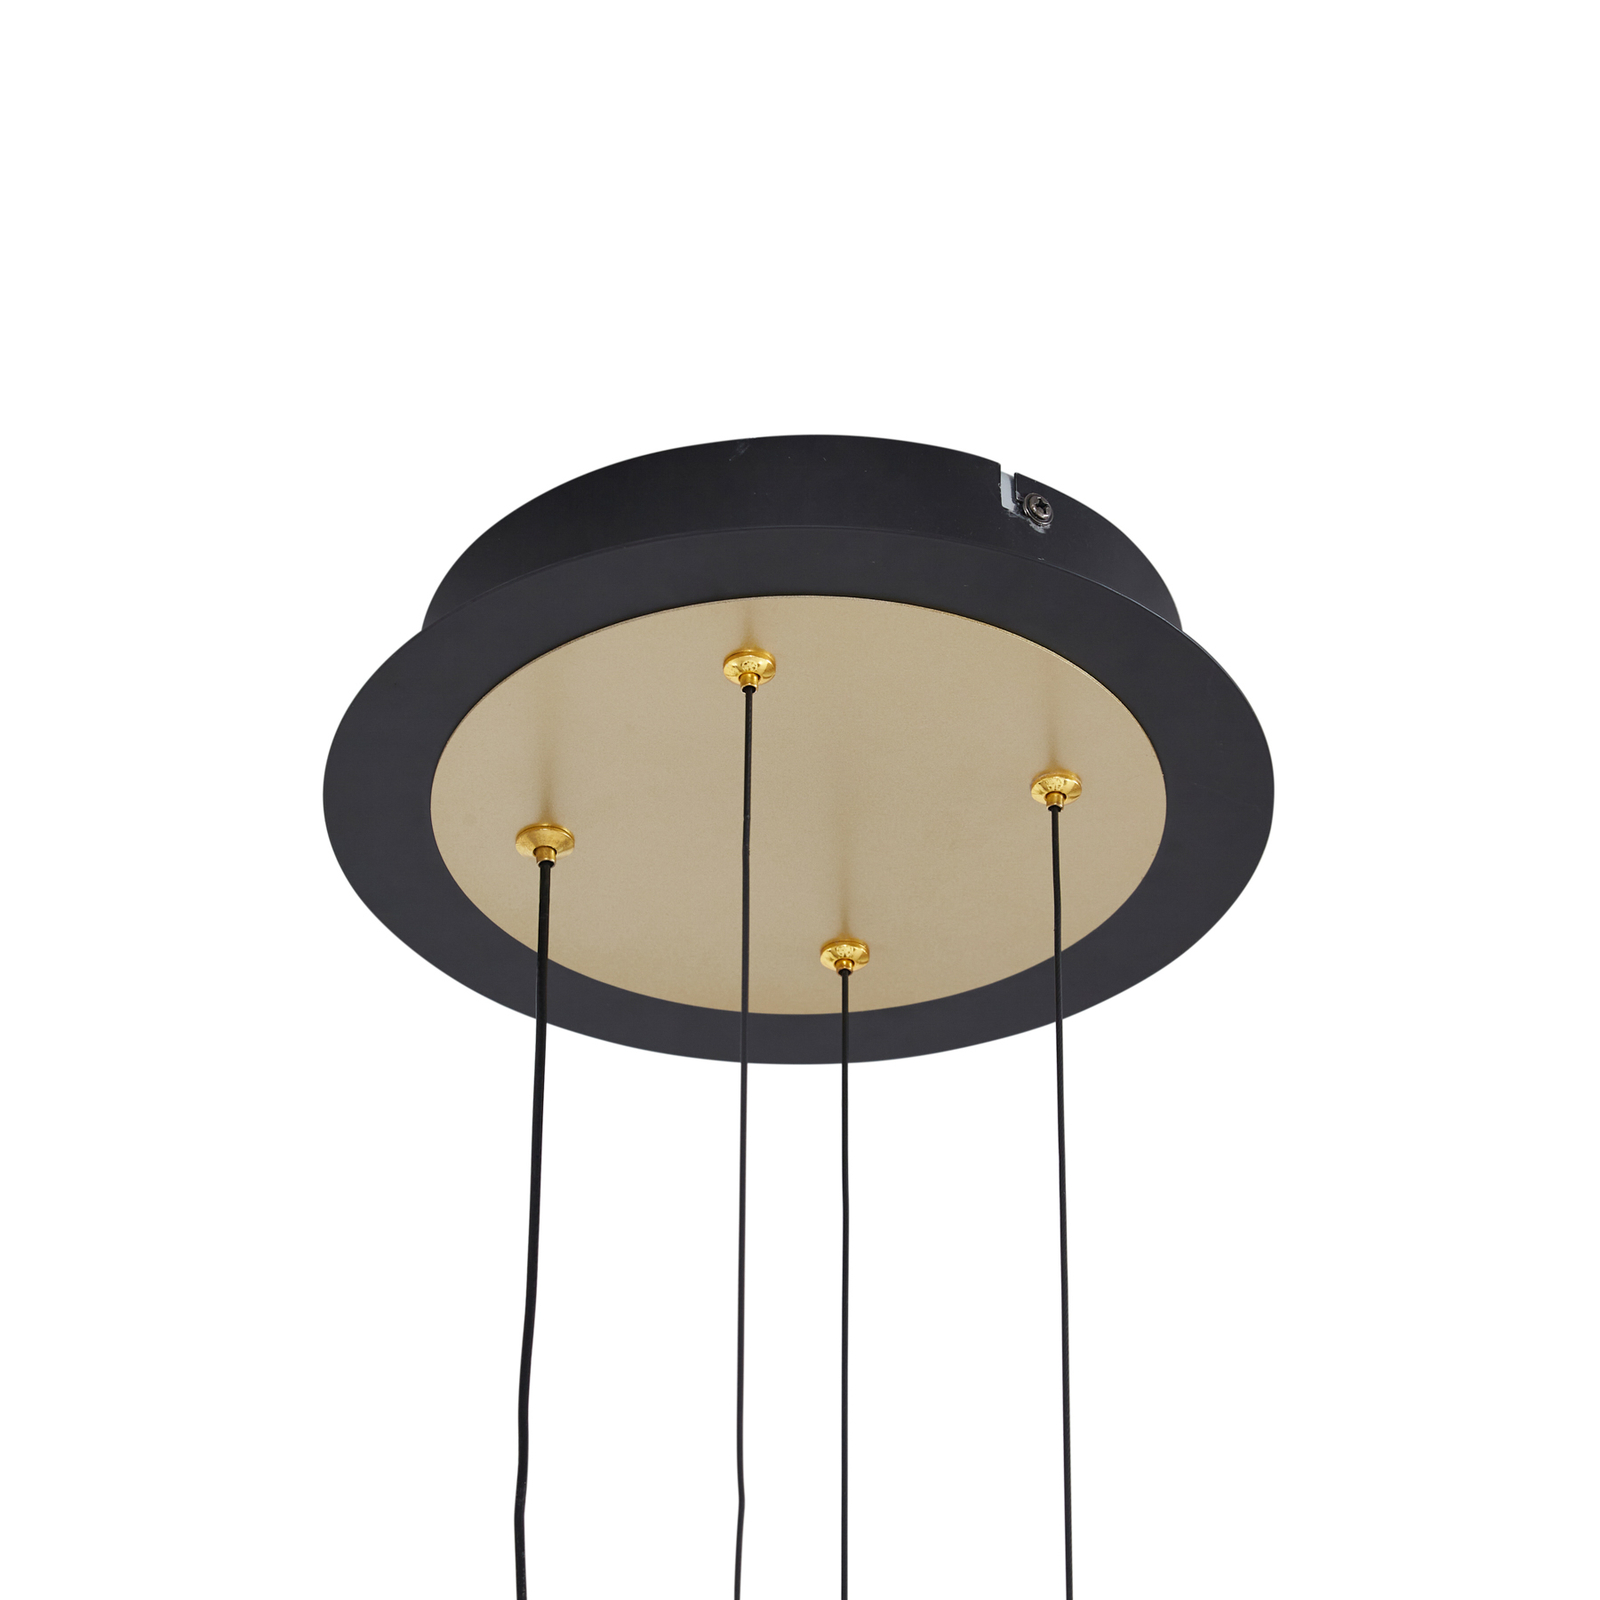 Lucande LED hanging light Pallo, 12-bulb, black/gold, glass